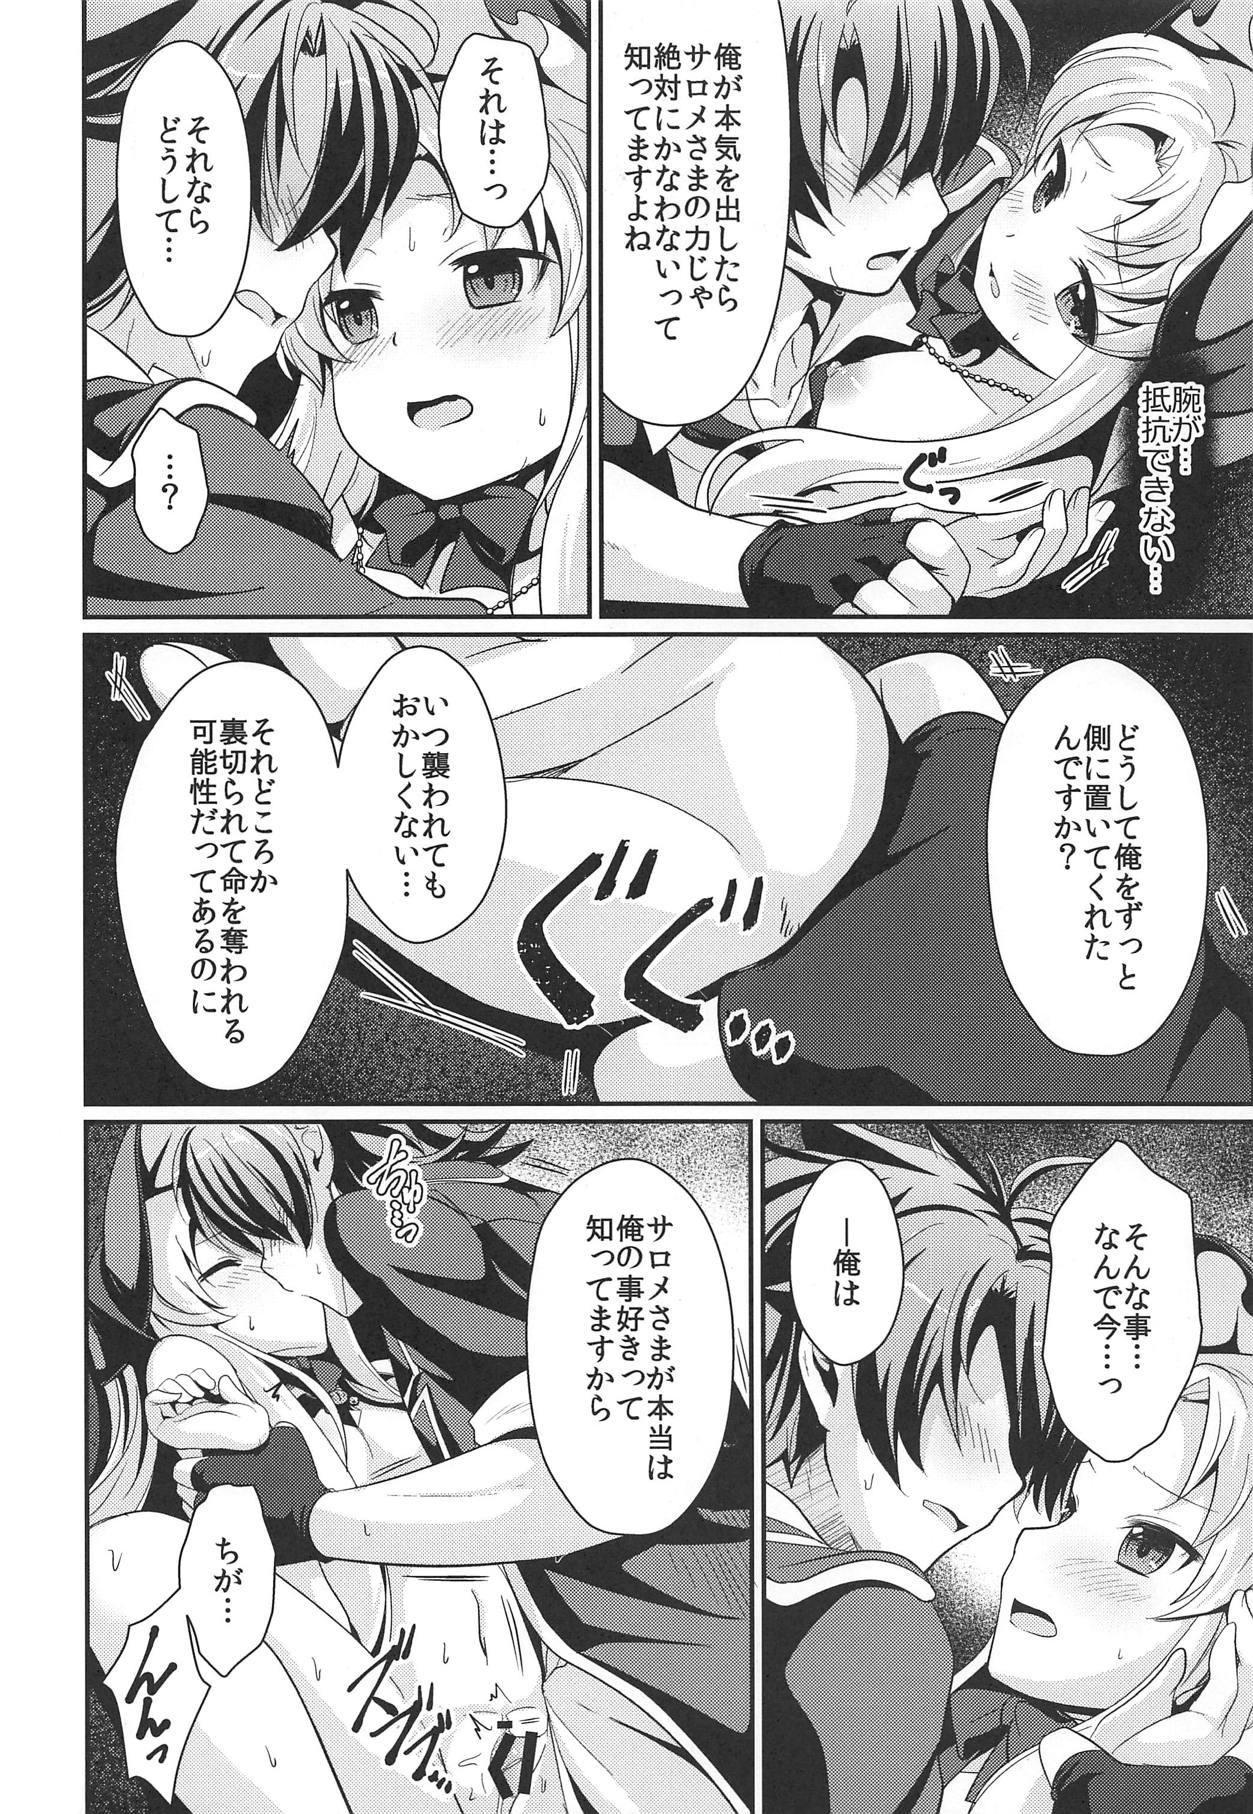 Rebolando Kinki no Alchimia 2 - Kaitou tenshi twin angel Rubia - Page 9